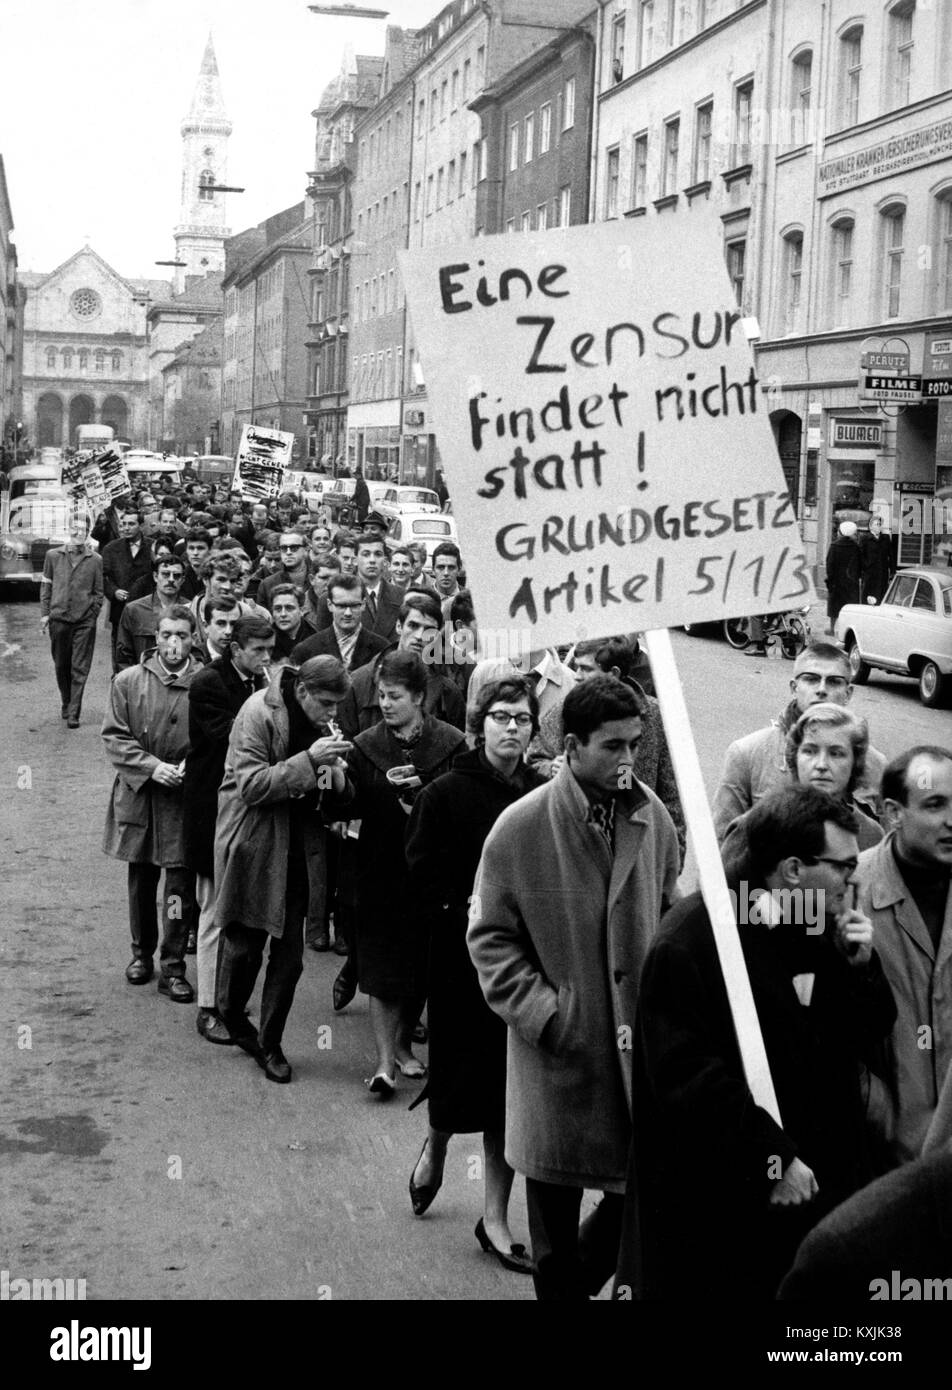 Eine Demonstration gegen die Verhaftung von Spiegel Redakteure fand in  München im Oktober 1962 statt. Vorne rechts der Studentenführer Christian  Semler mit einem Plakat, auf dem Artikel 5/1/3 des Grundgesetzes, "Eine  Zensur